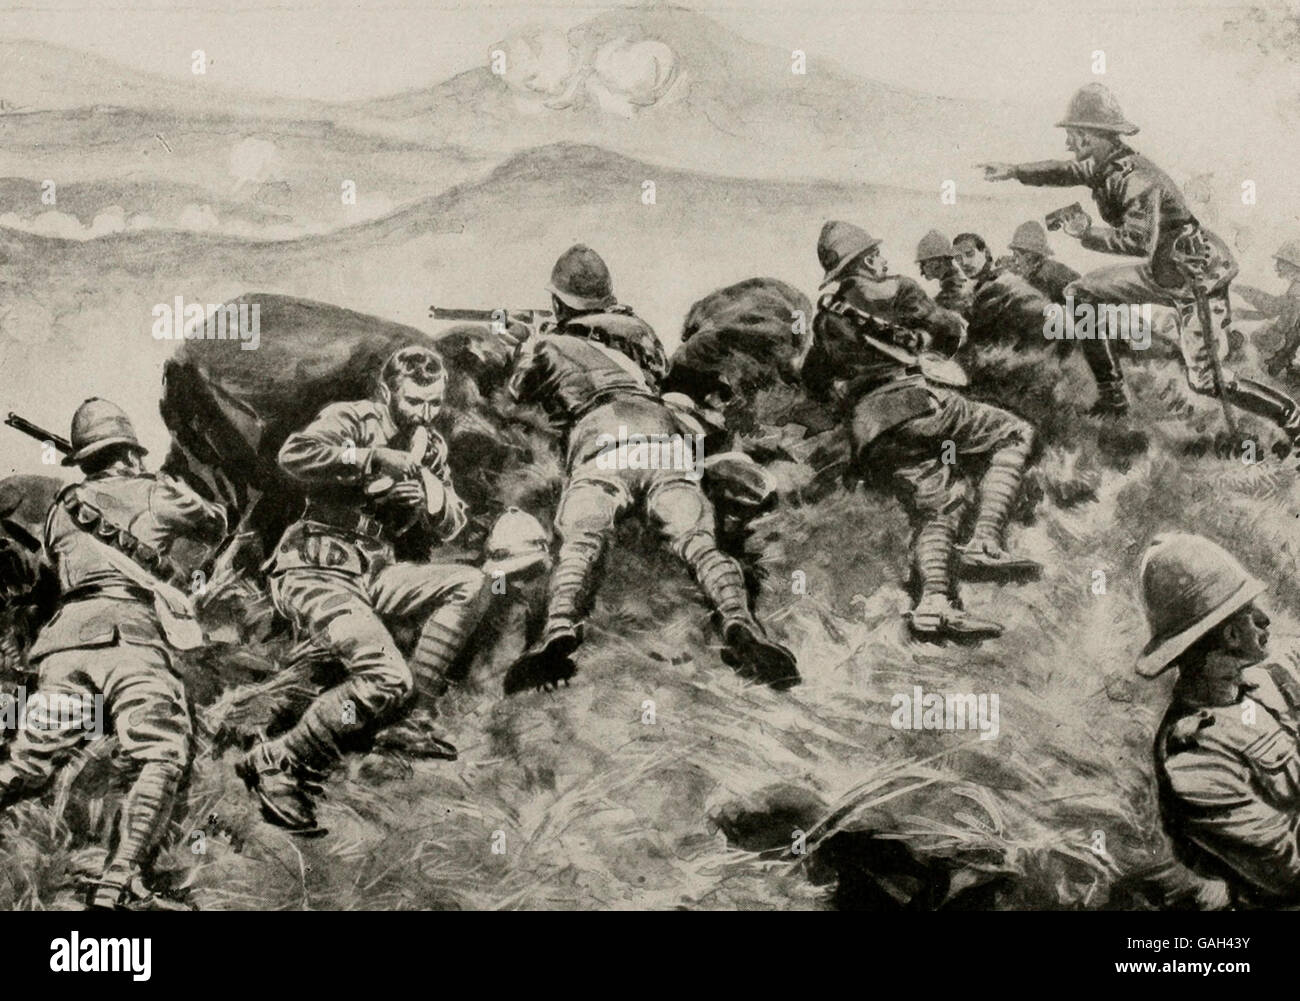 Briten und deutsche kämpfen in Afrika. Ein verzweifelter Kampf in der Nähe des Mount Kilimanjaro in Britisch-Ostafrika im ersten Weltkrieg Stockfoto